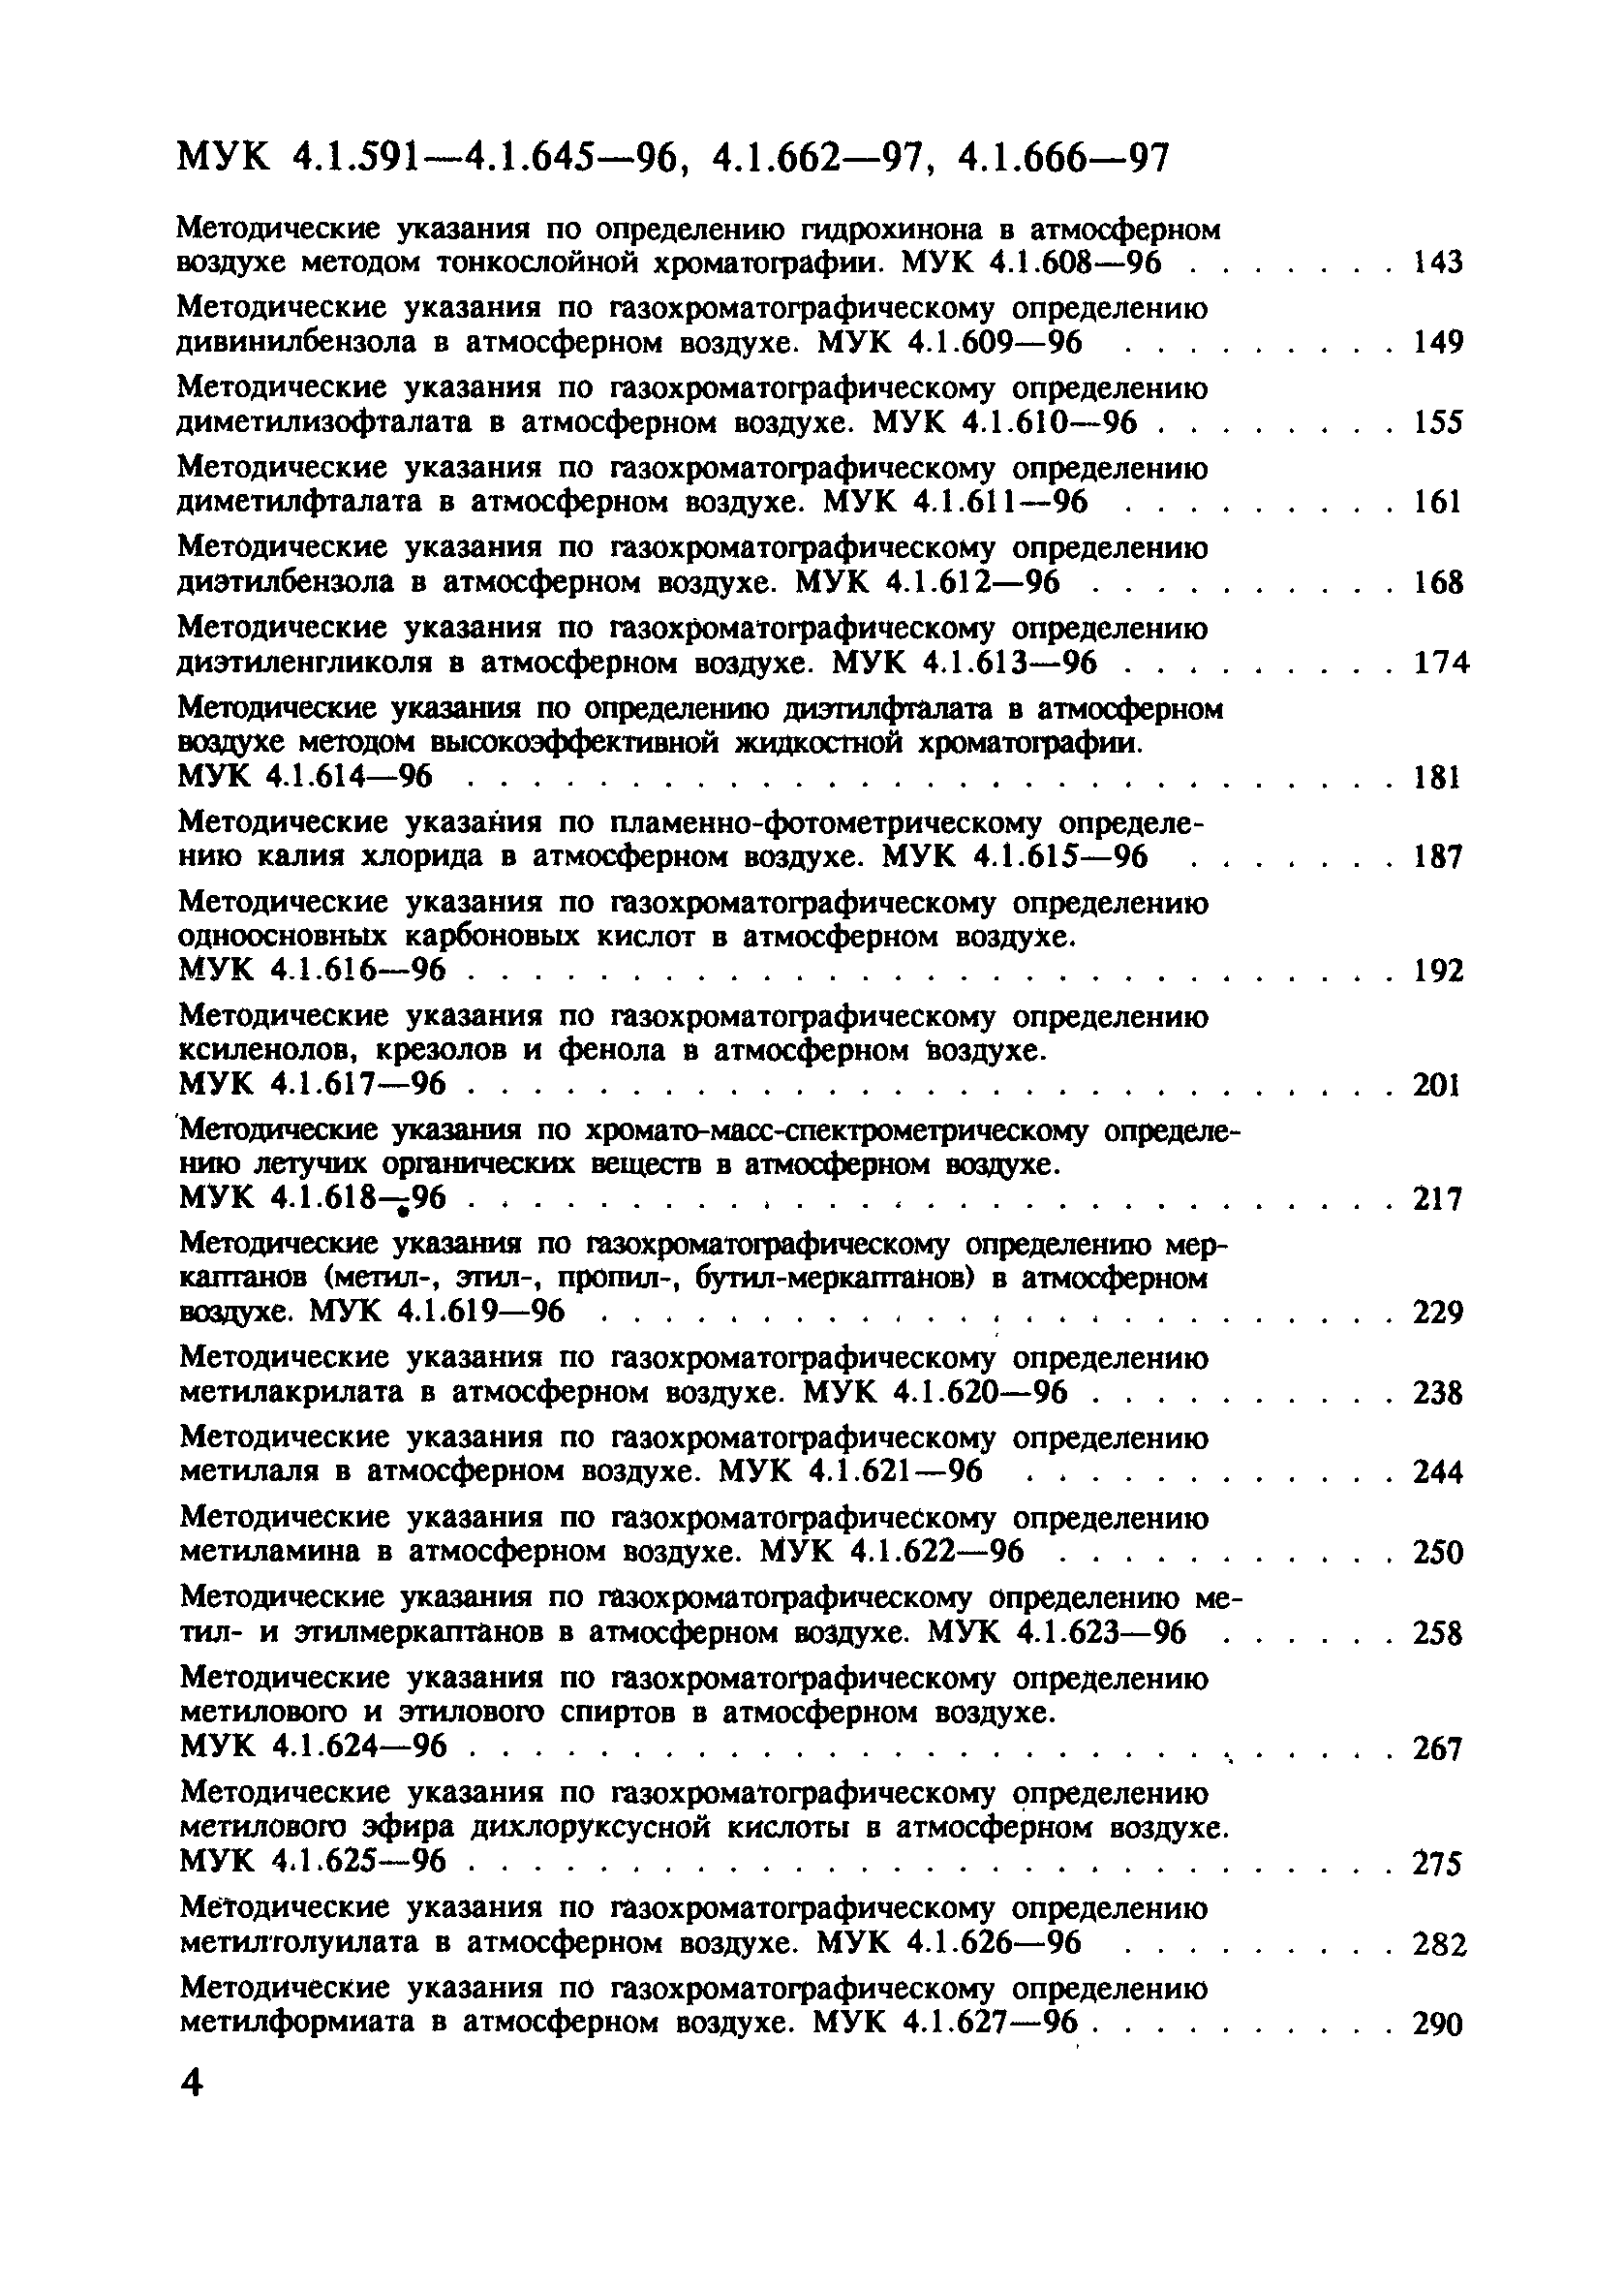 МУК 4.1.626-96